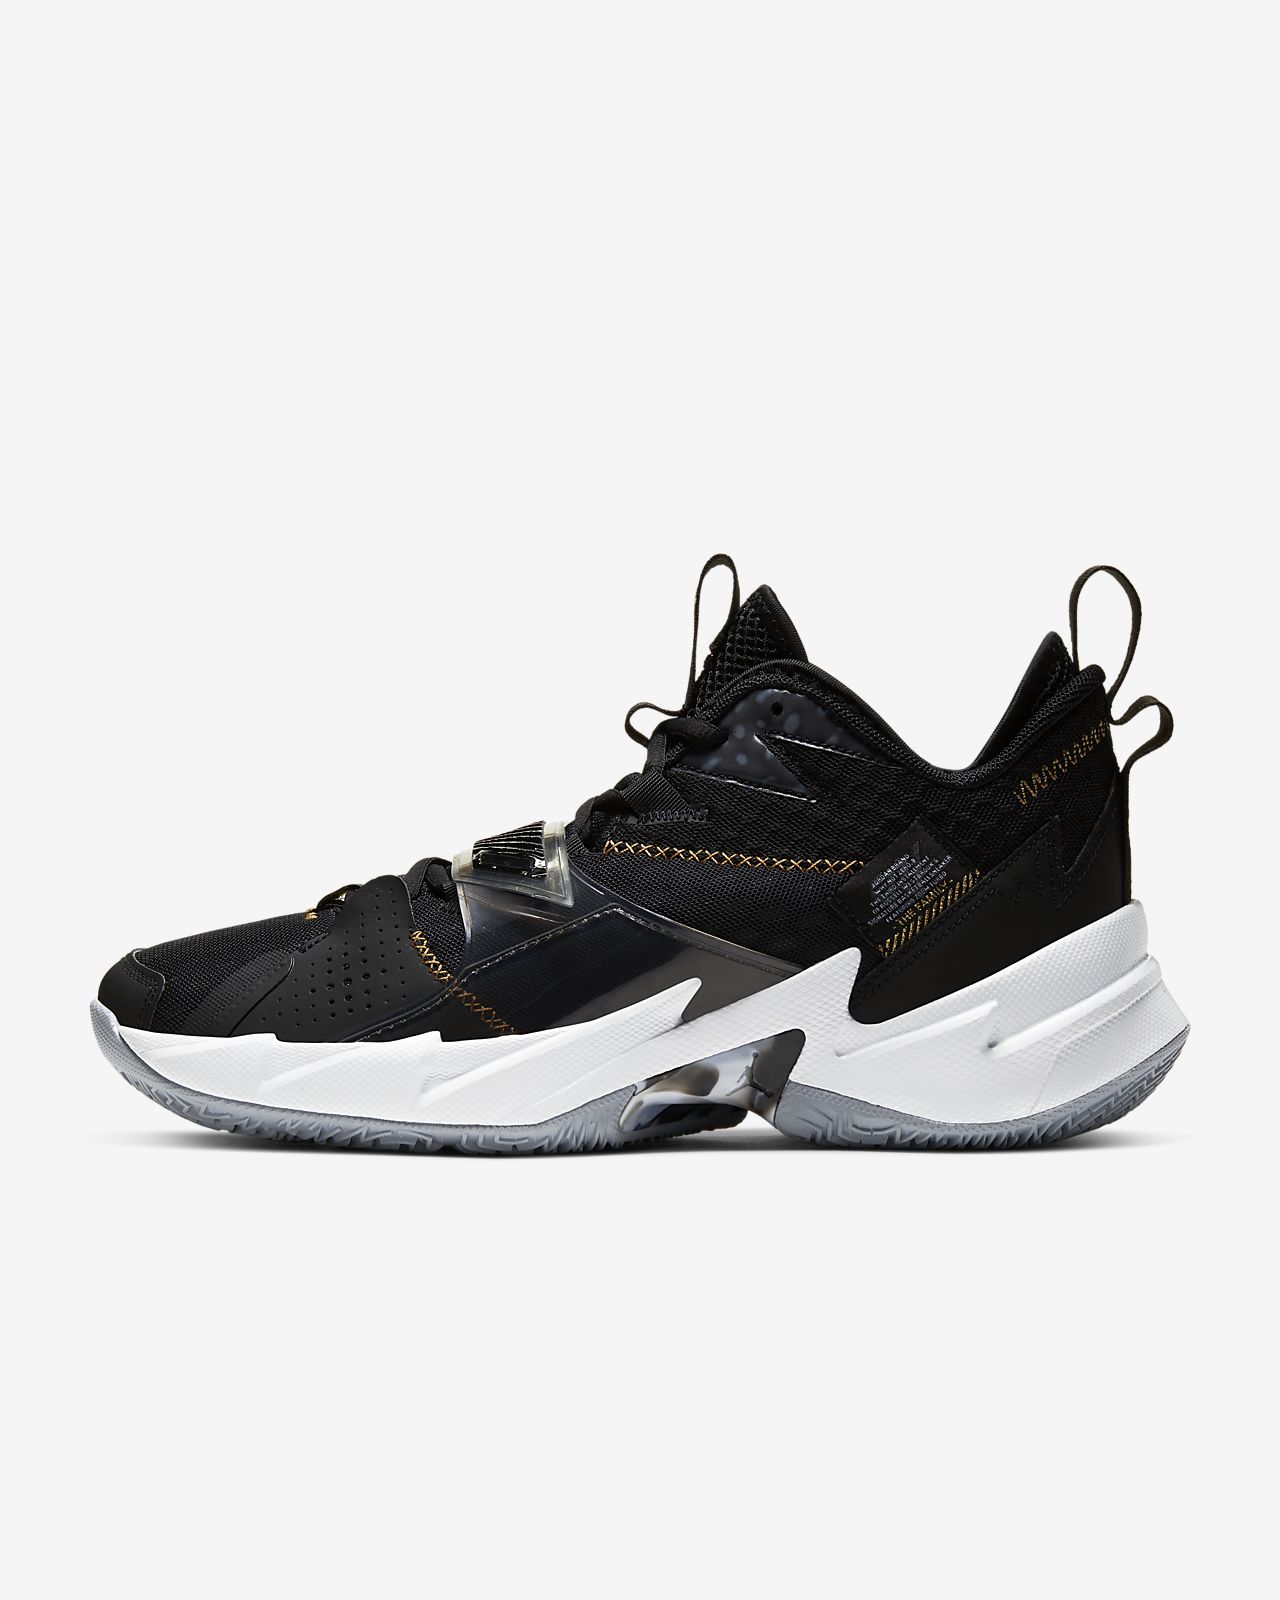 Jordan Why Not? Zer0.3 Basketball Shoe. Nike.com